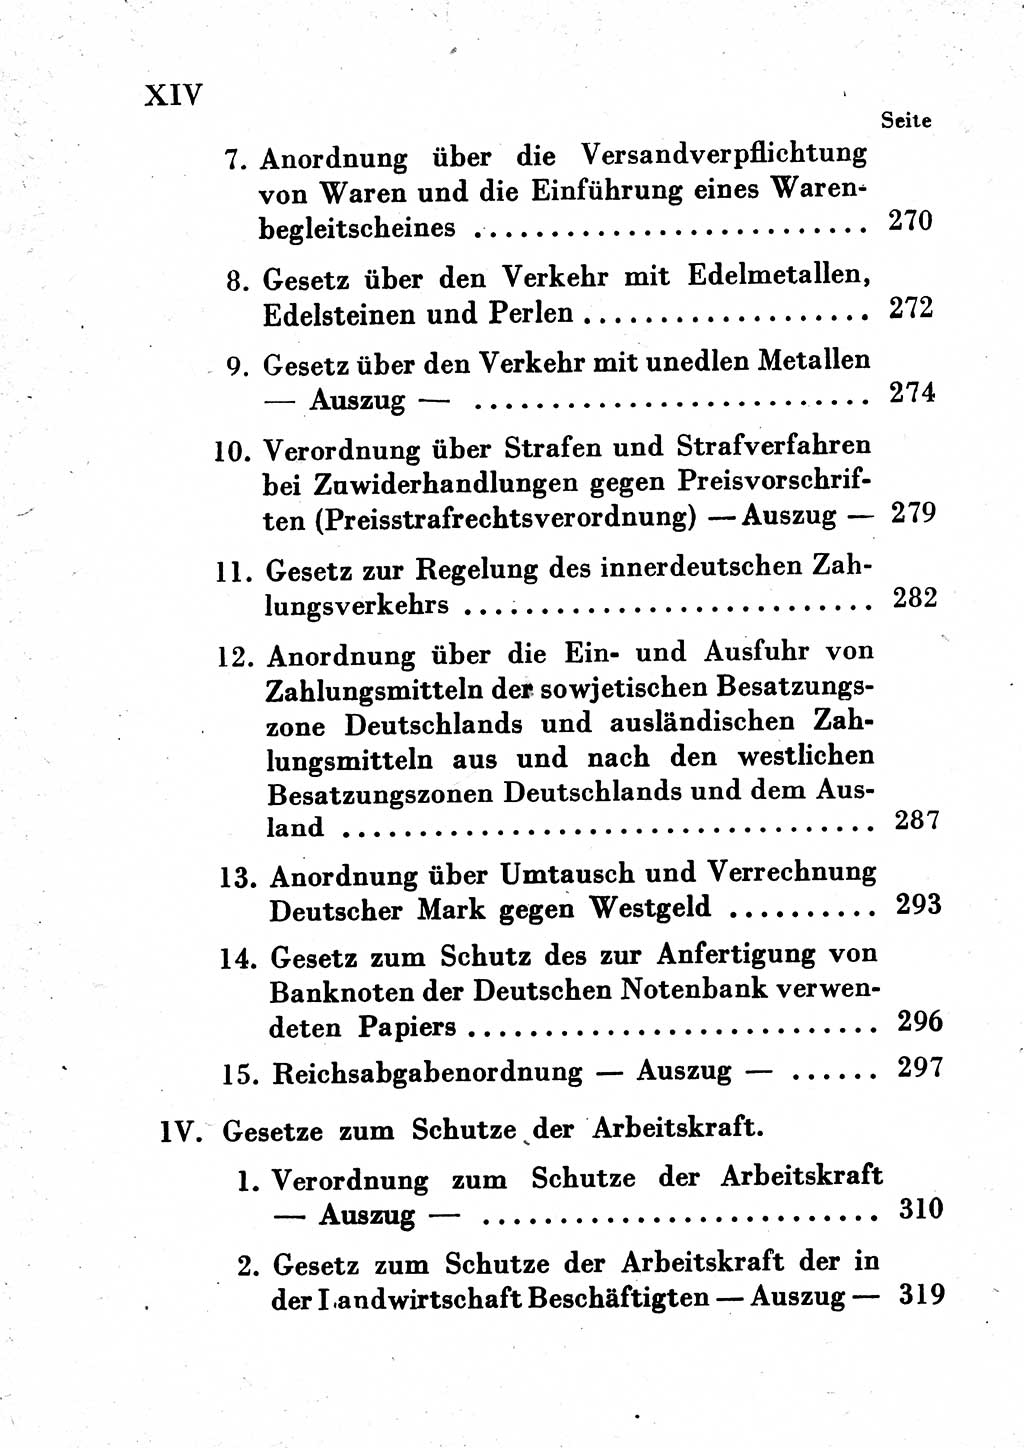 Einleitung Strafgesetzbuch (StGB) und andere Strafgesetze [Deutsche Demokratische Republik (DDR)] 1954, Seite 13 (Einl. StGB Strafges. DDR 1954, S. 13)